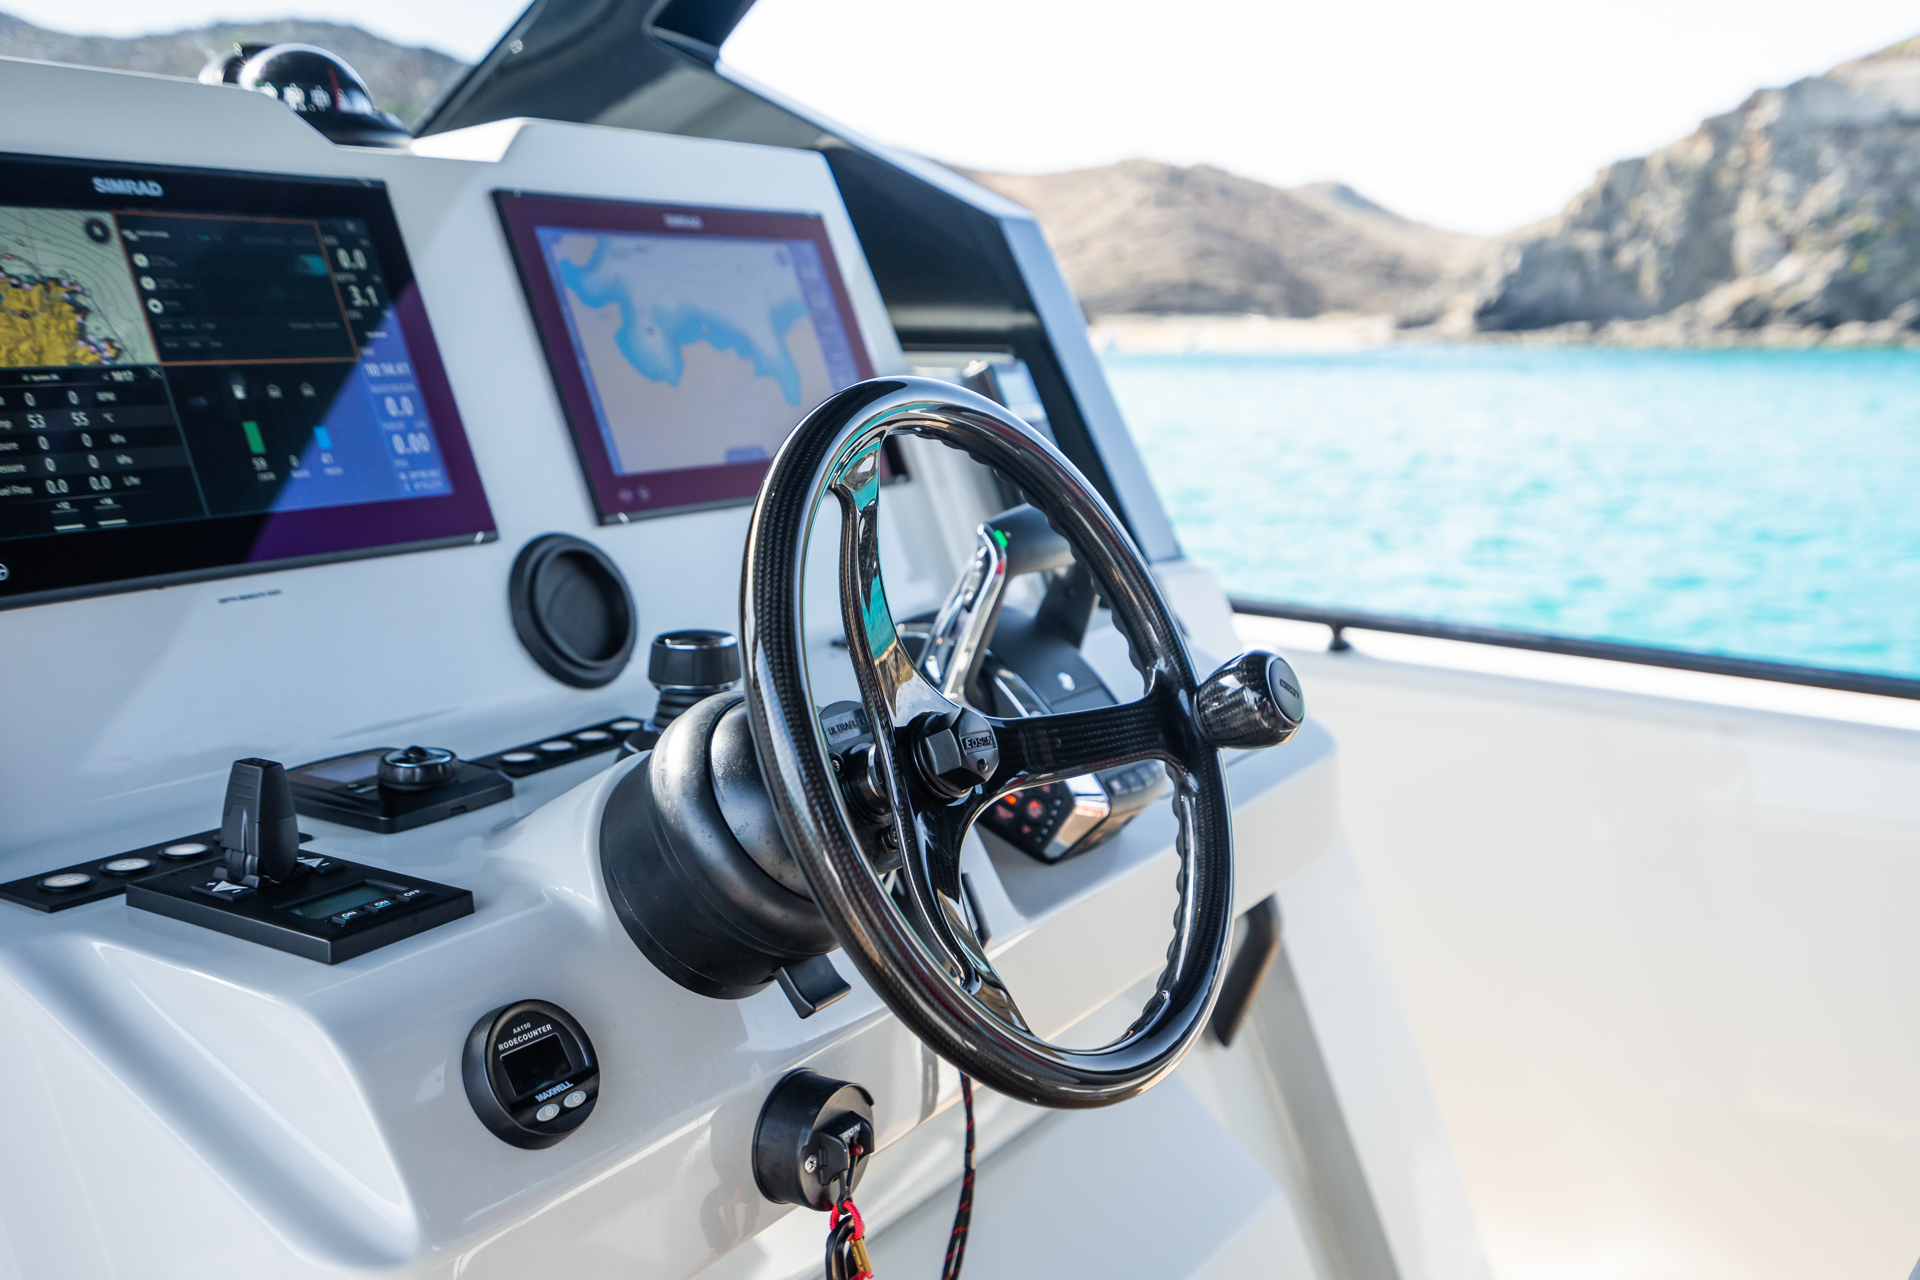 Chaser 50 Laguna for sale in Menorca